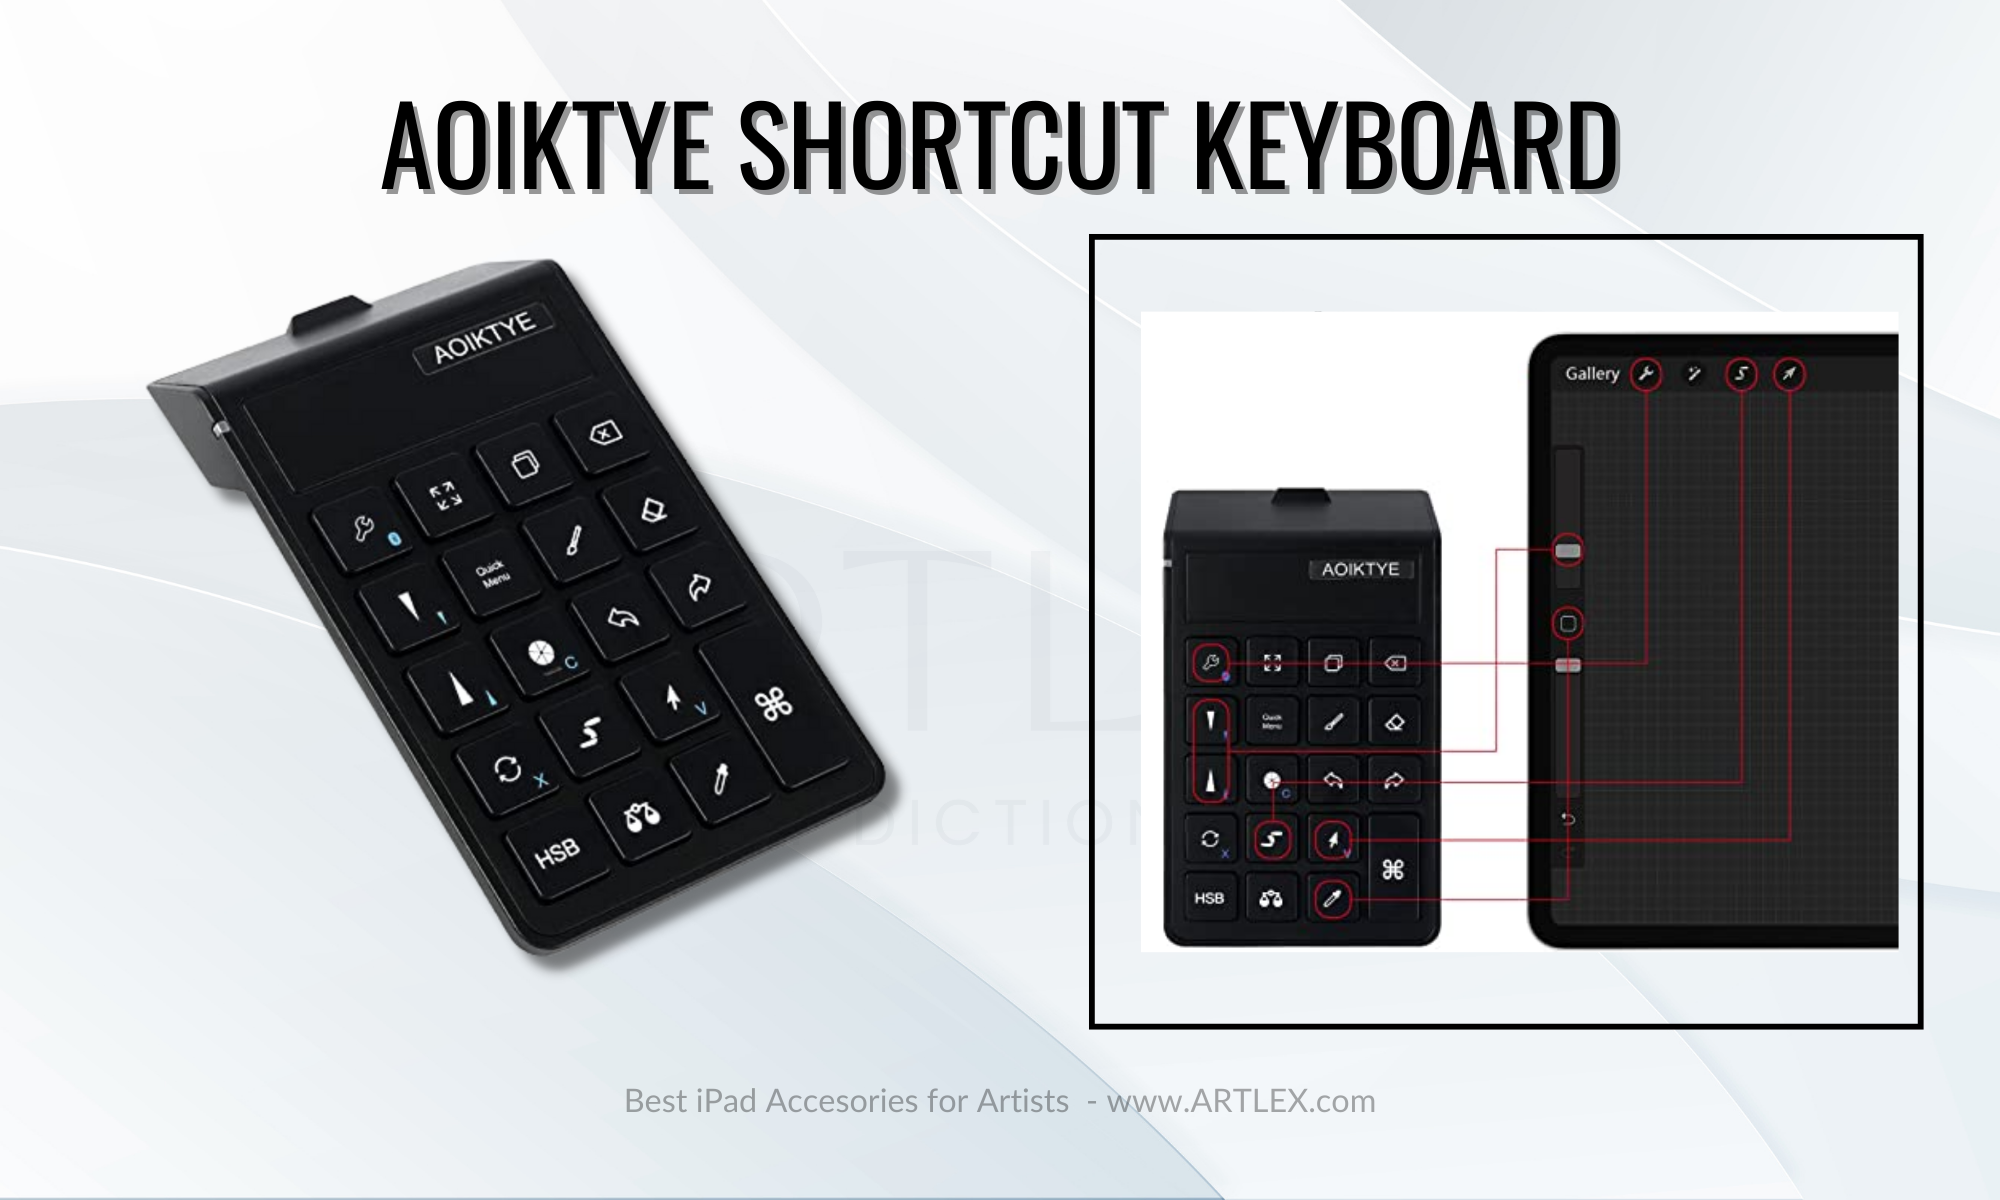 Best Shortcut Keyboard for iPad — AOIKTYE Keyboard